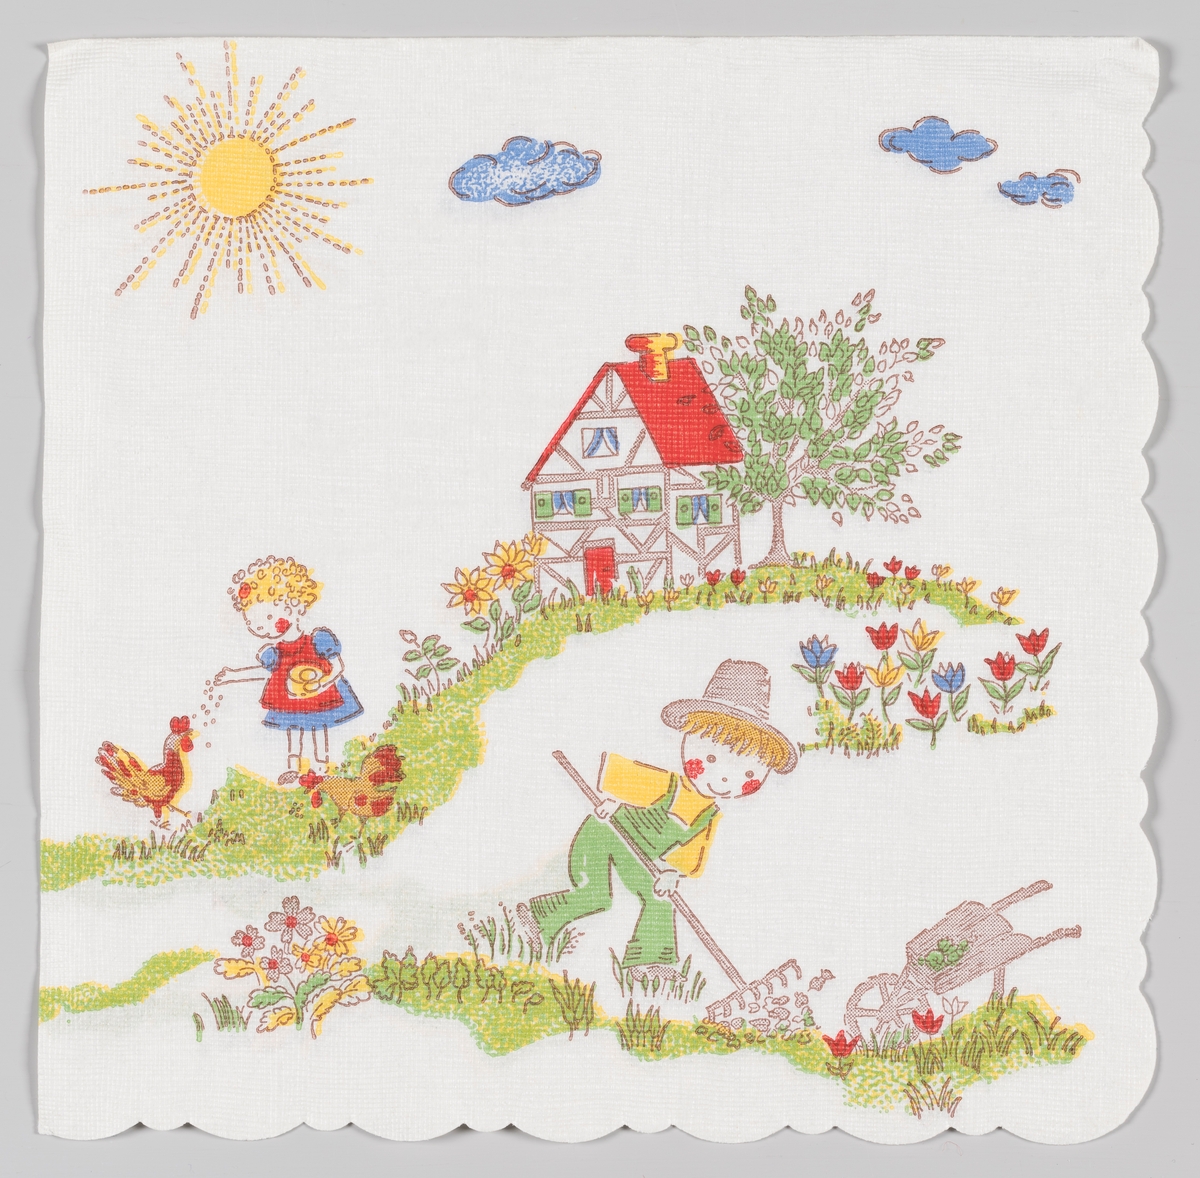 En gutt gjør hagearbeid og en jente fore hønene. Begge barna står i en blomstereng med et hus i bindingsverk i bakgrunnen. Solen stråler på himmelen med blå skyer.